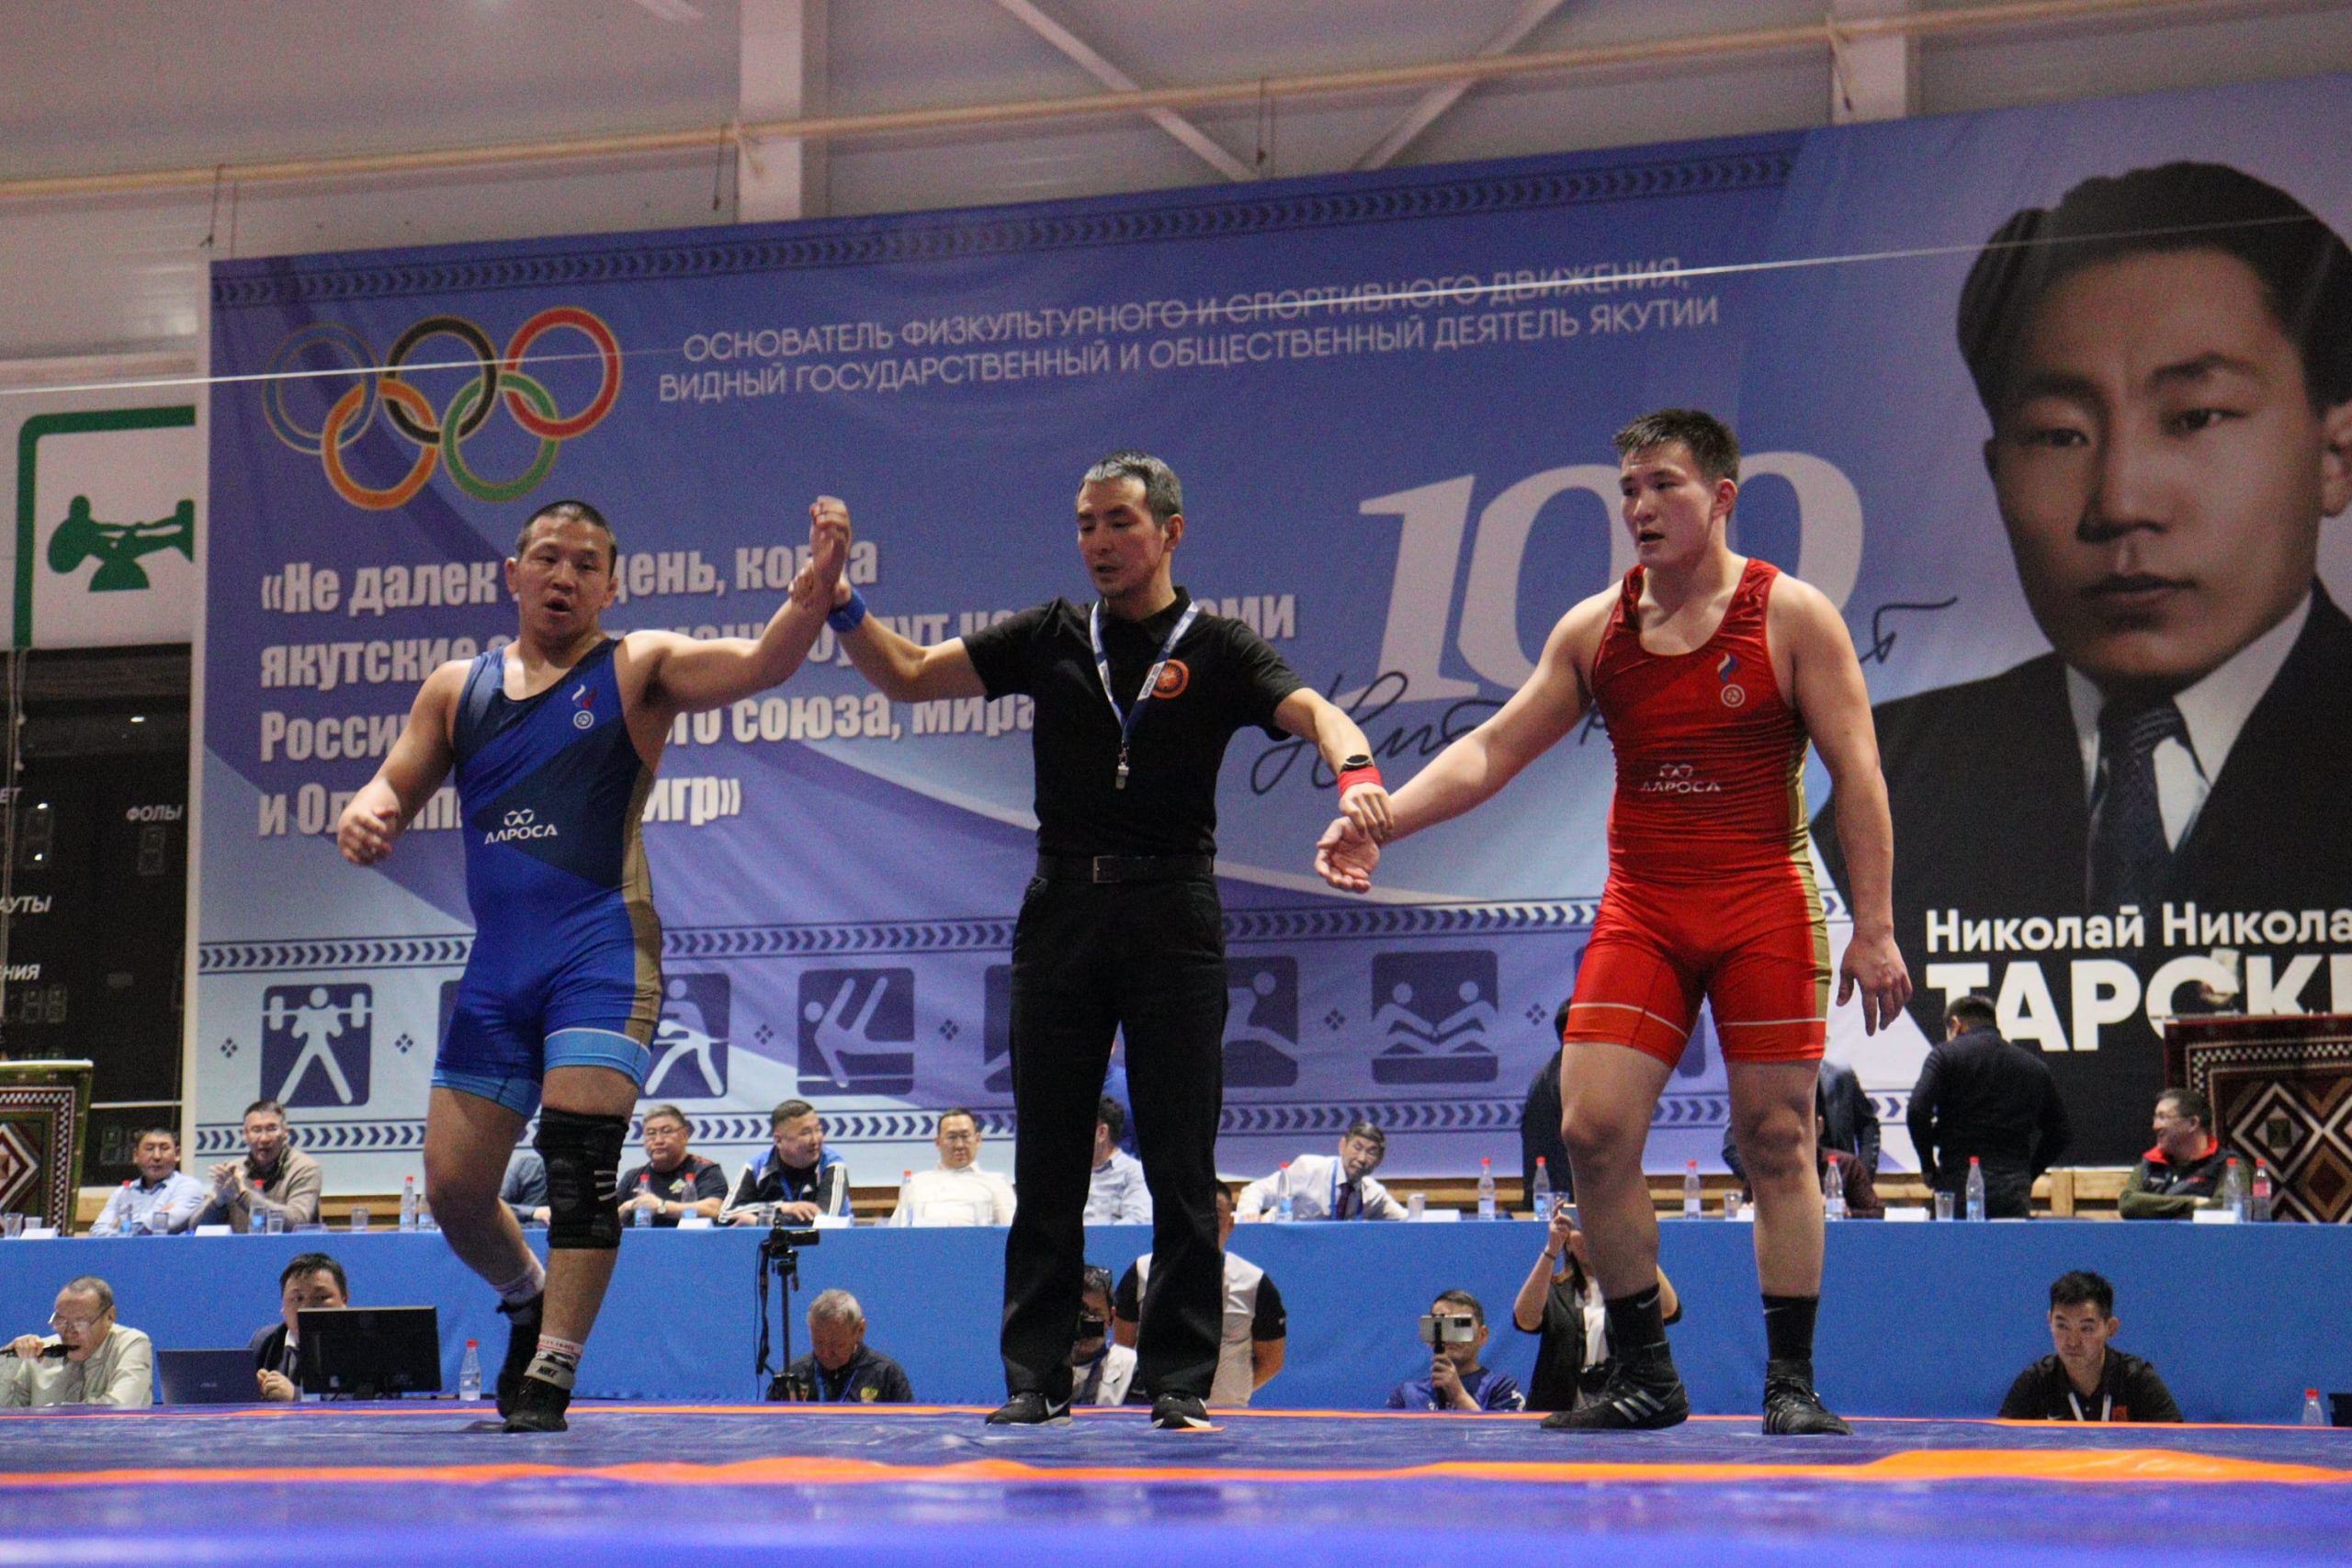 Борец Константин Власов в седьмой раз завоевал золотую медаль чемпионата Якутии